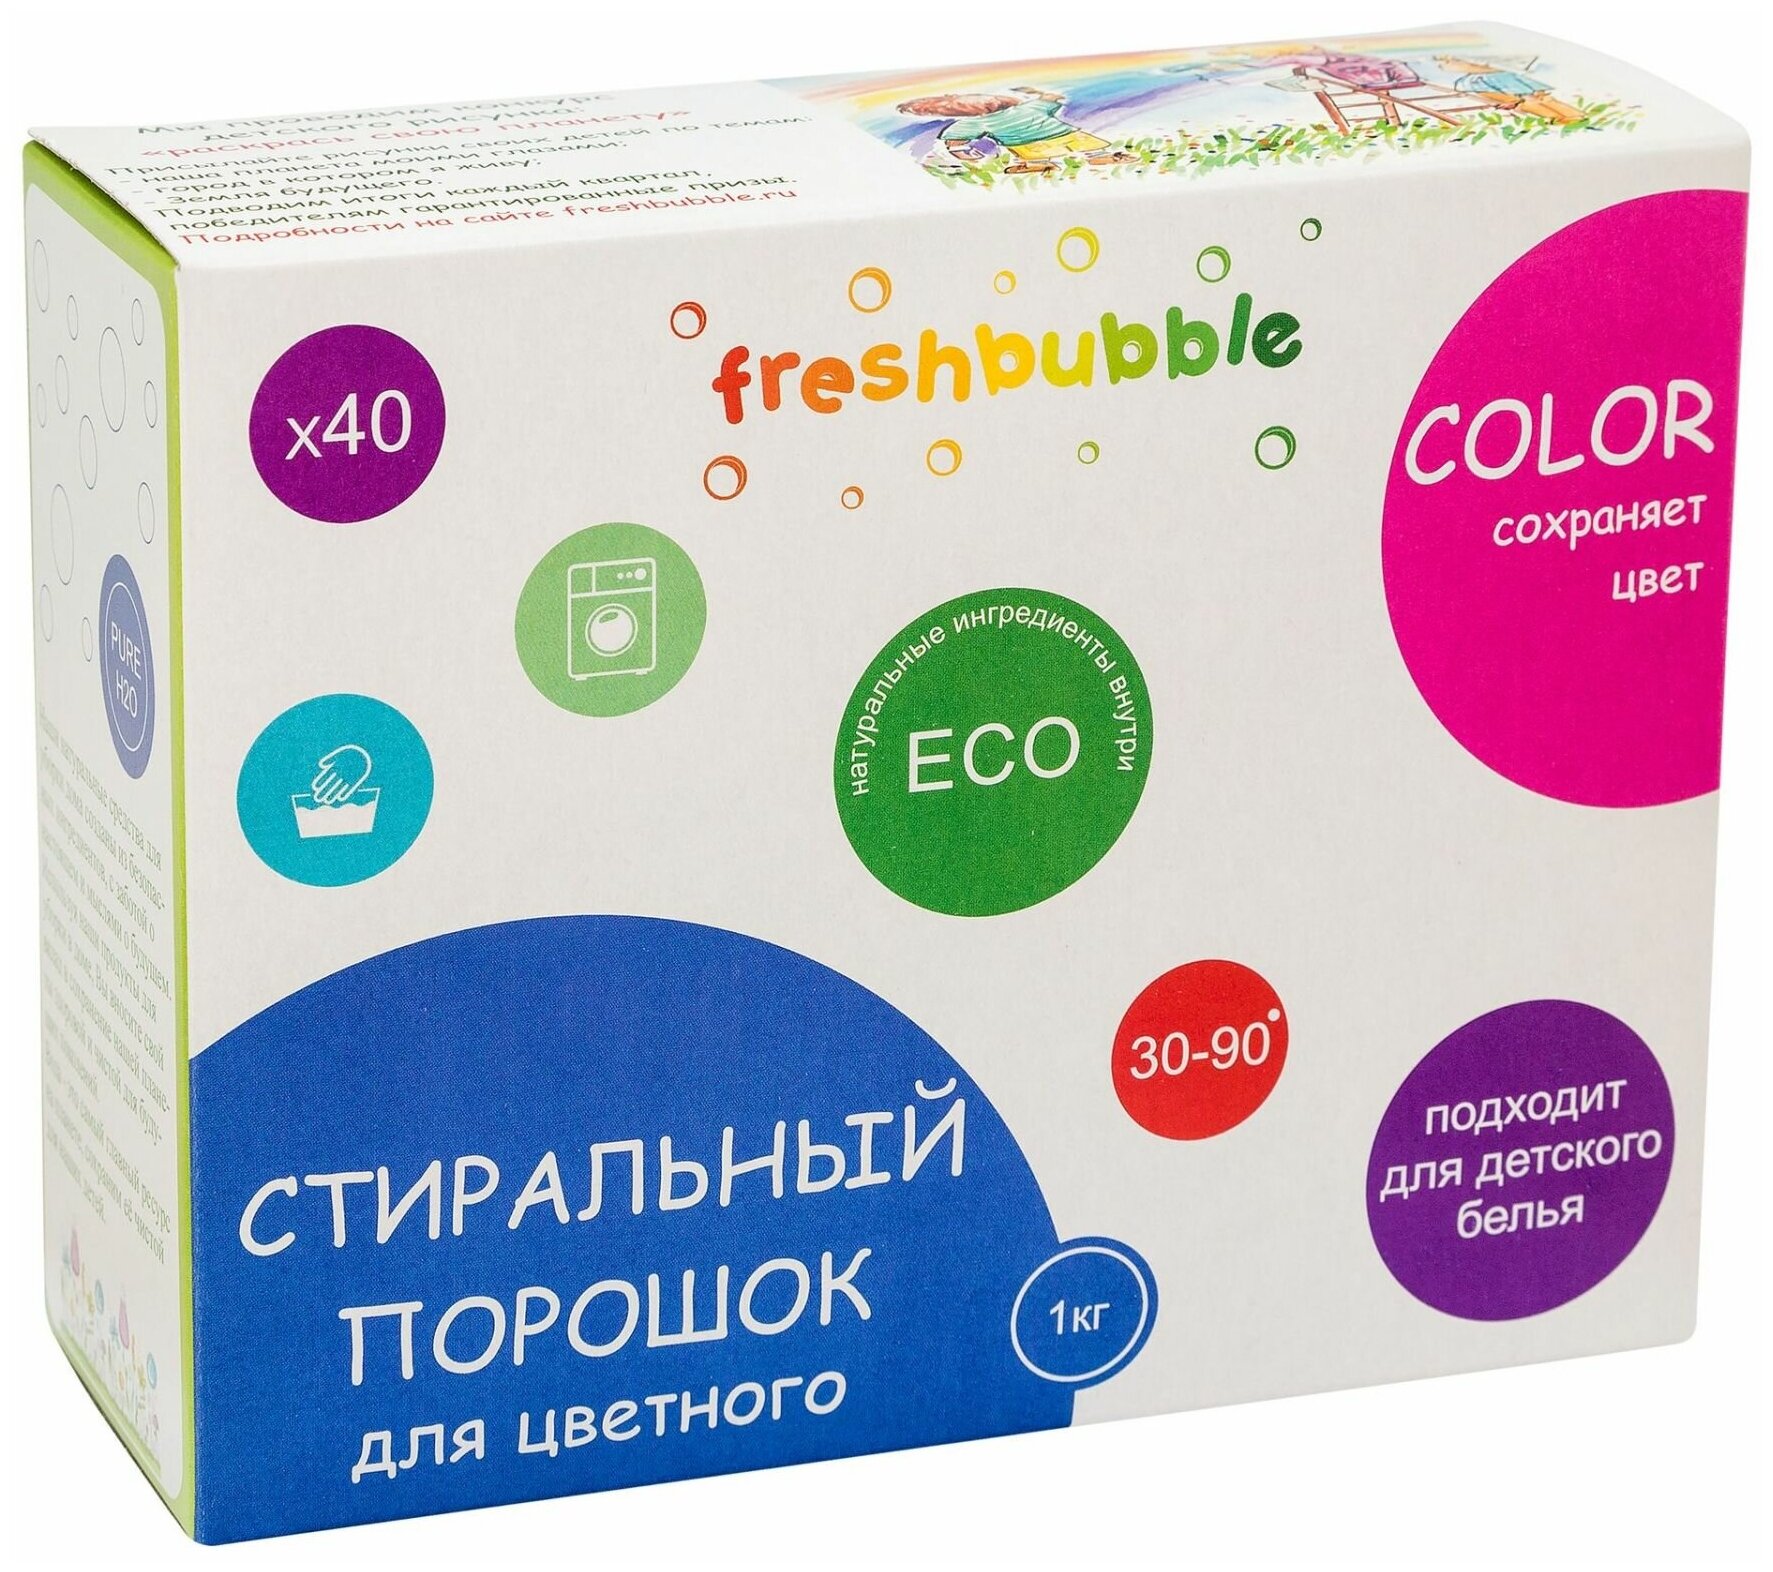 Стиральный порошок Freshbubble для цветного белья 1кг - фото №9